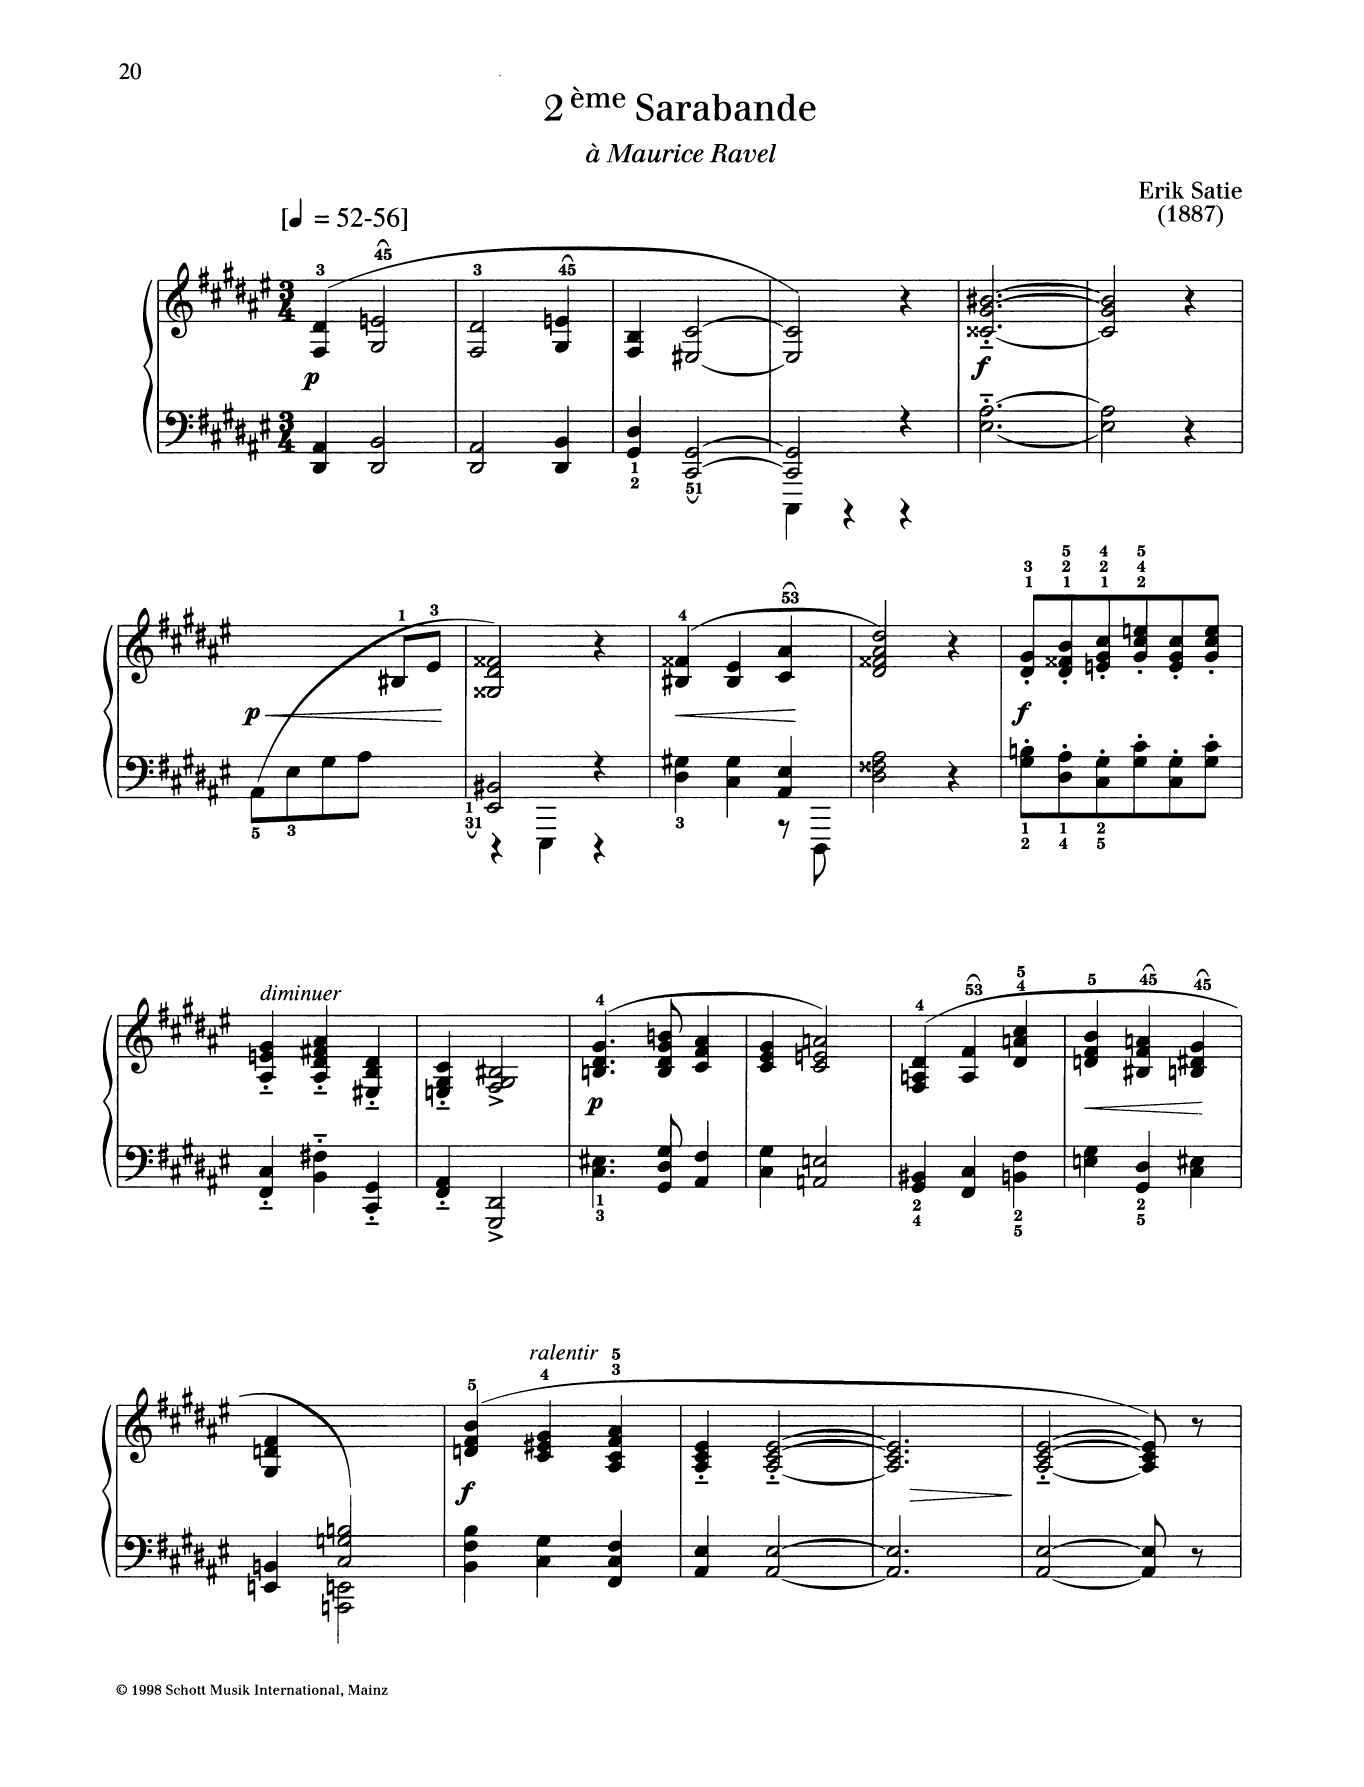 Download Erik Satie 2eme Sarabande Sheet Music